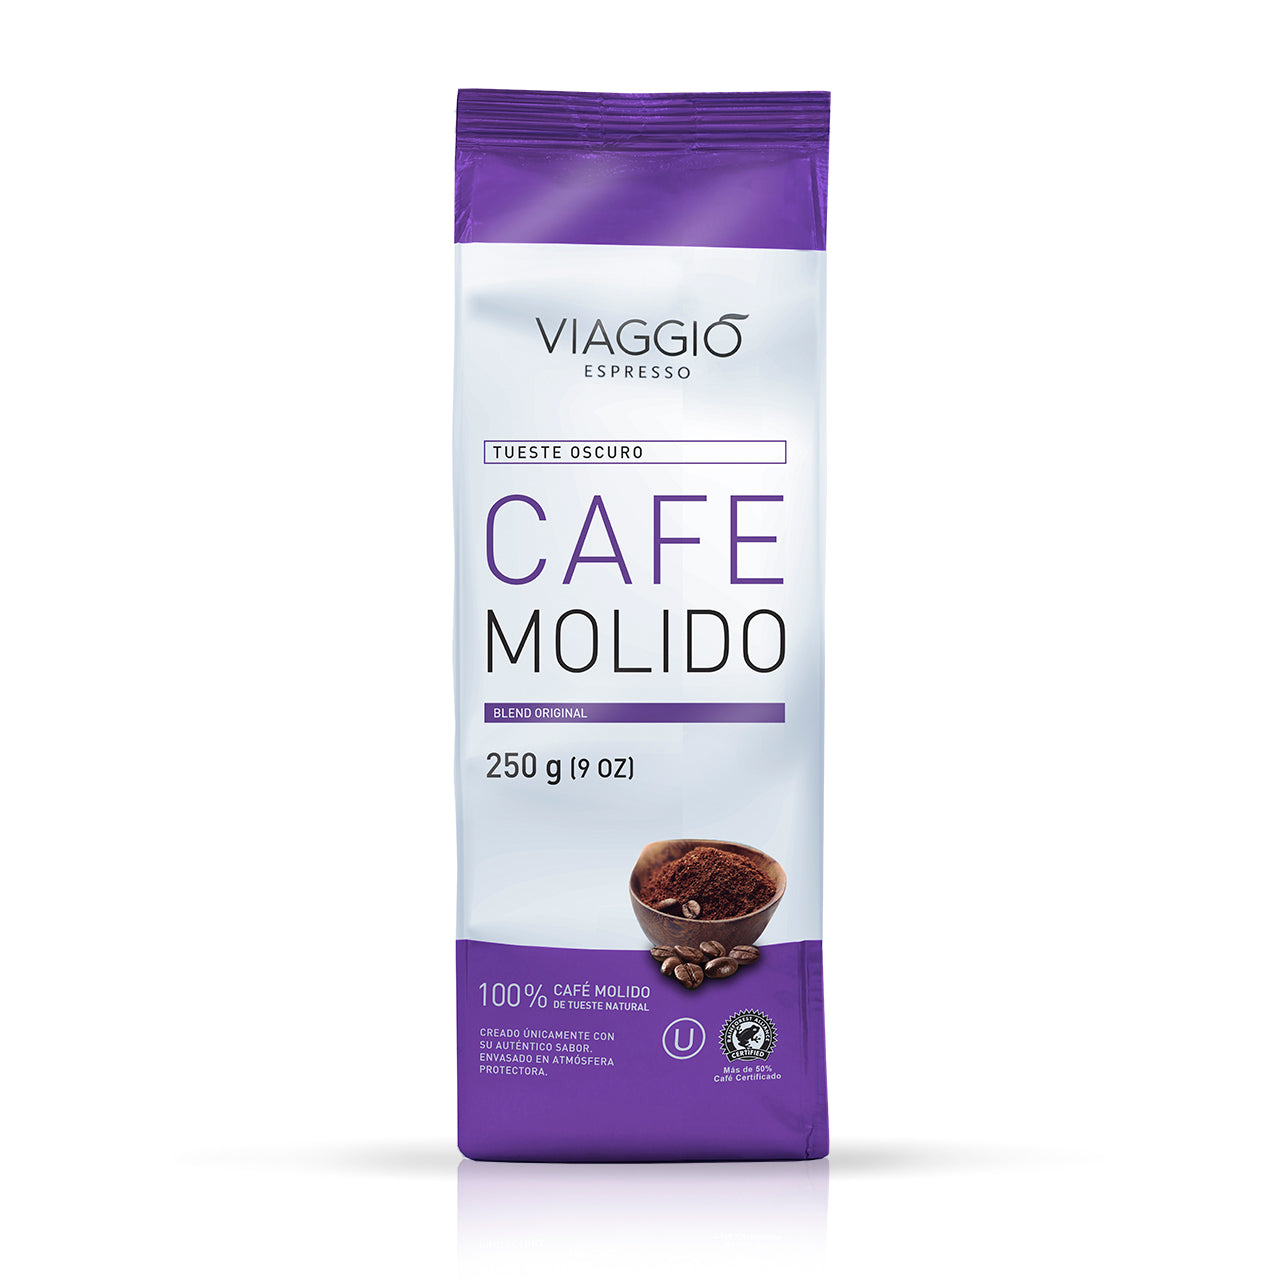 Tueste Oscuro | 250 gr. de Café Molido Café Molido Viaggio Espresso Viaggio Espresso - Viaggio Espresso